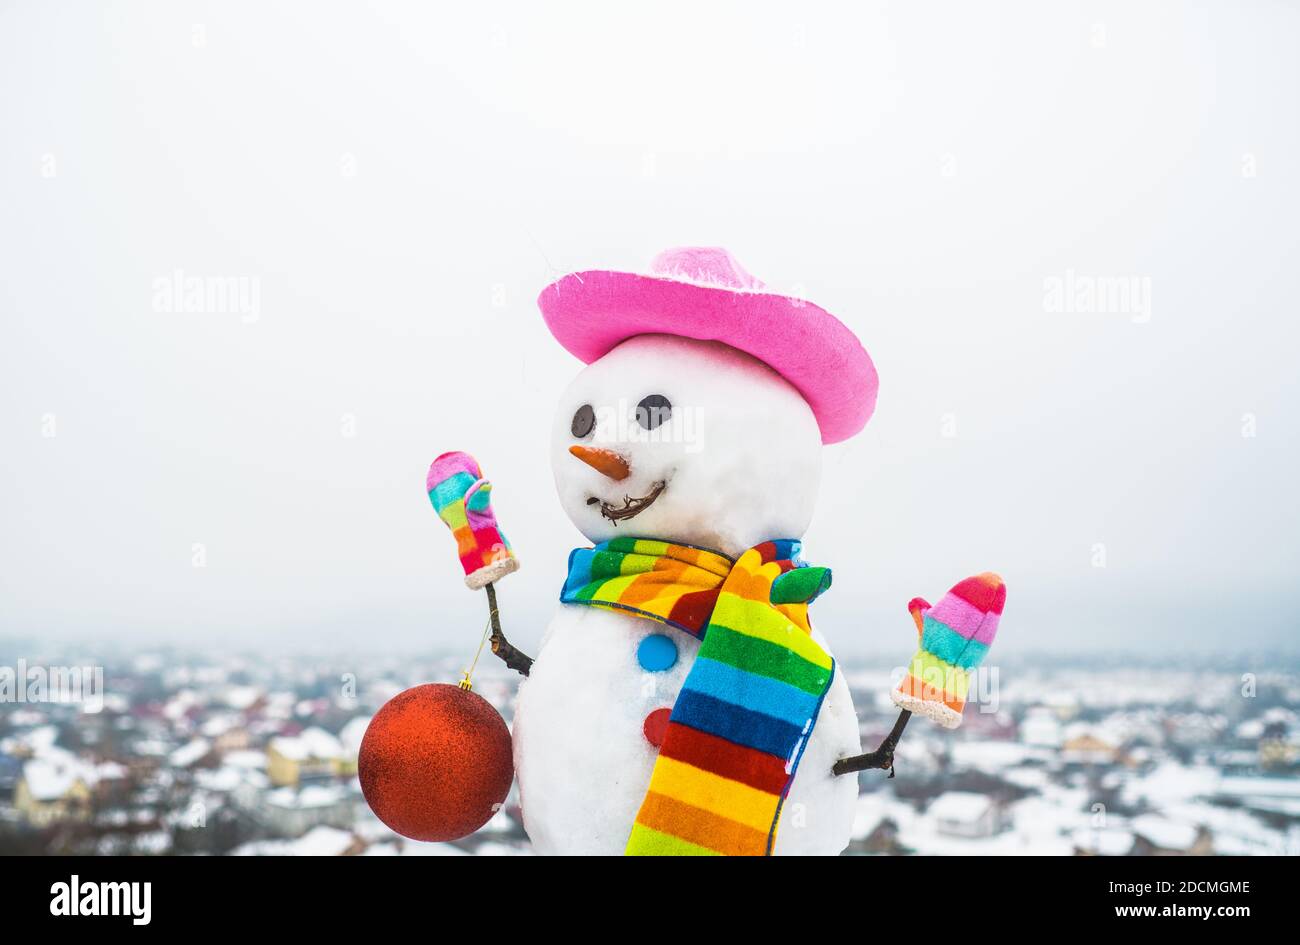 Schneemfrau mit Weihnachtsspielzeug. Schneemann hält Neujahr Ball. Schneemann in rosa Hut. Weihnachten. Lustiger Schneemann. Frohe Weihnachten und ein glückliches neues Jahr Stockfoto